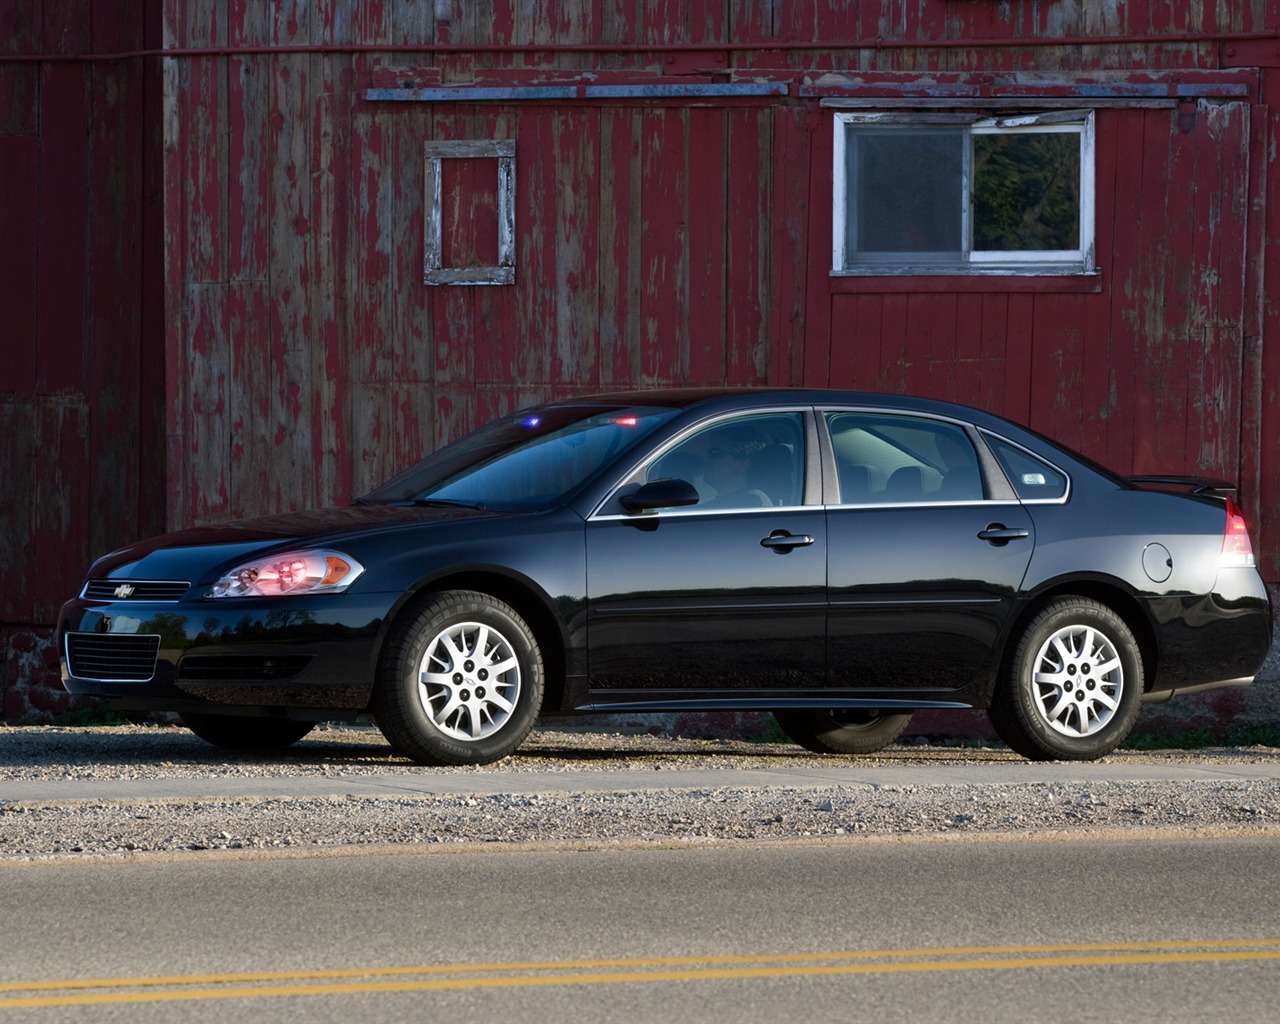 Chevrolet Impala de Policía de vehículos - 2011 fondos de escritorio de alta definición #8 - 1280x1024